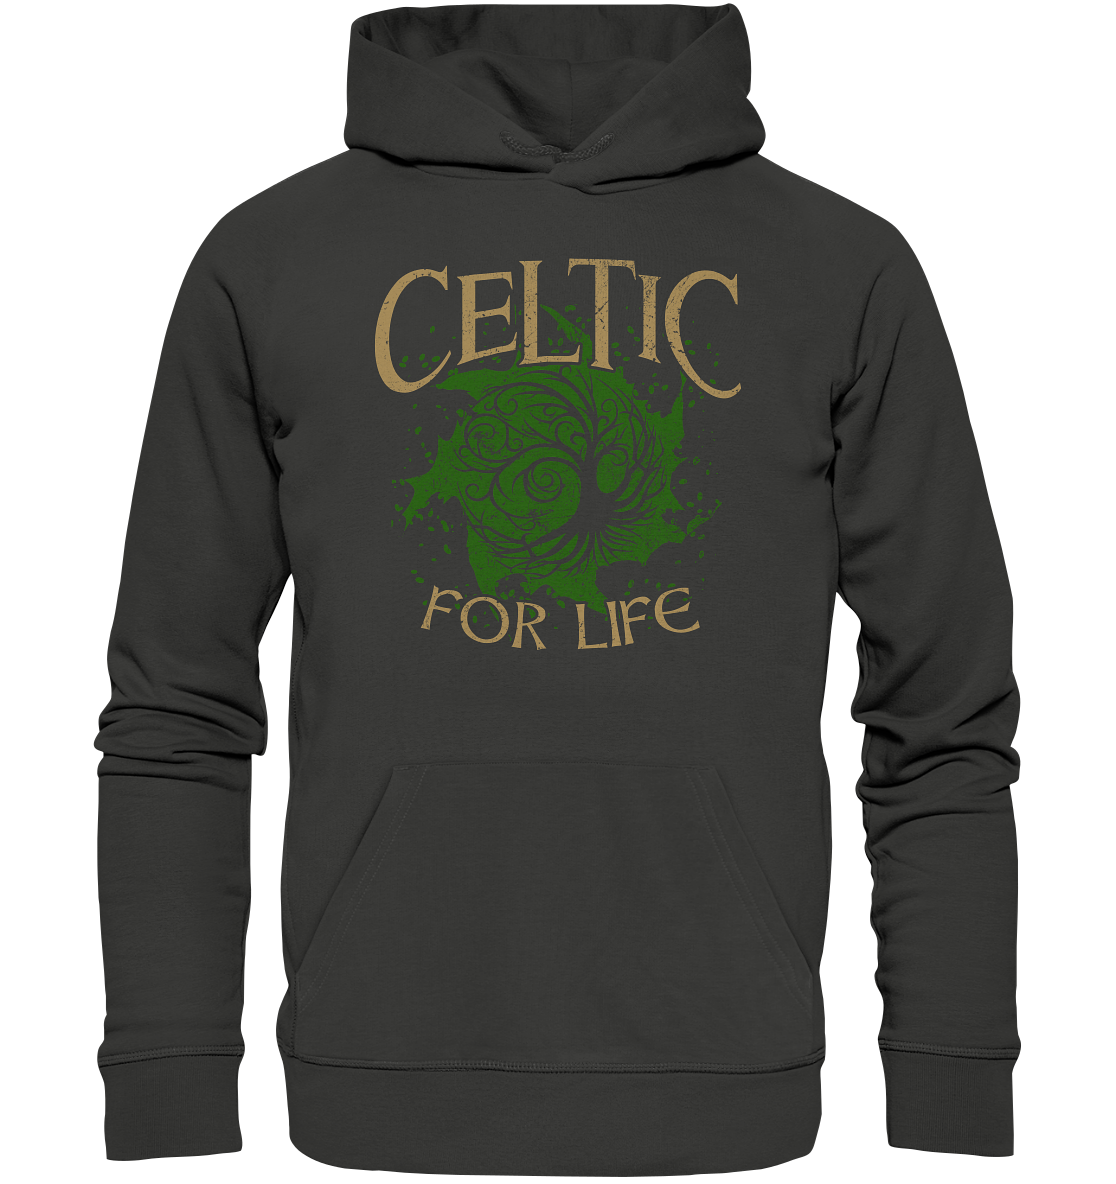 Celtic "For Life" - Premium Unisex Hoodie